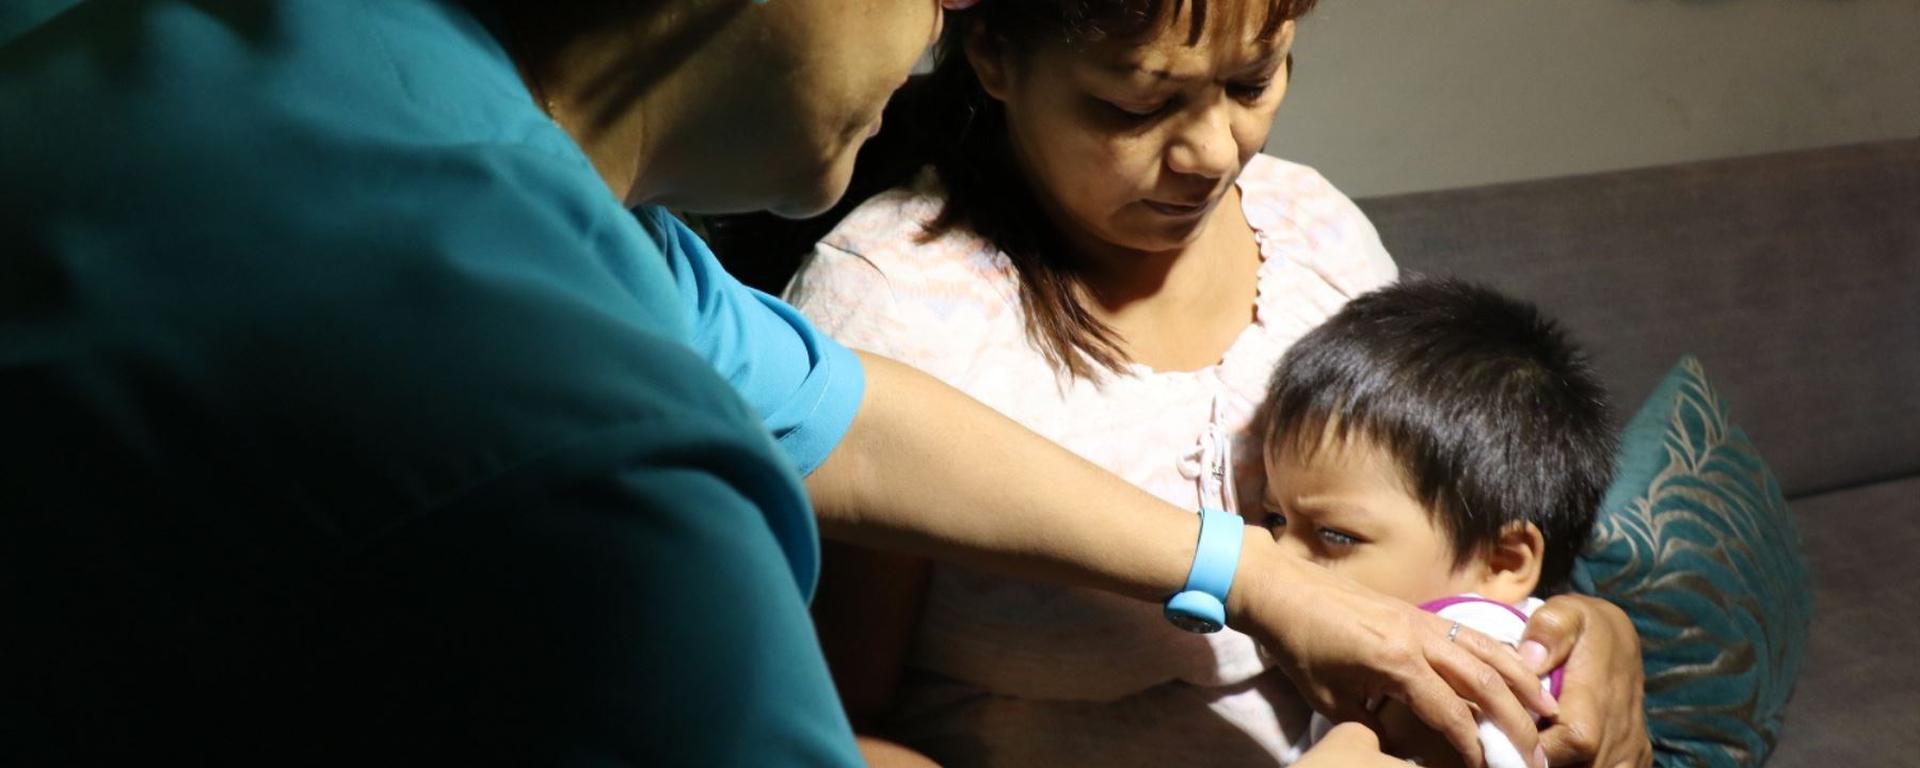 Alerta epidemiológica por sarampión en Perú: síntomas y recomendaciones ante riesgo de propagación